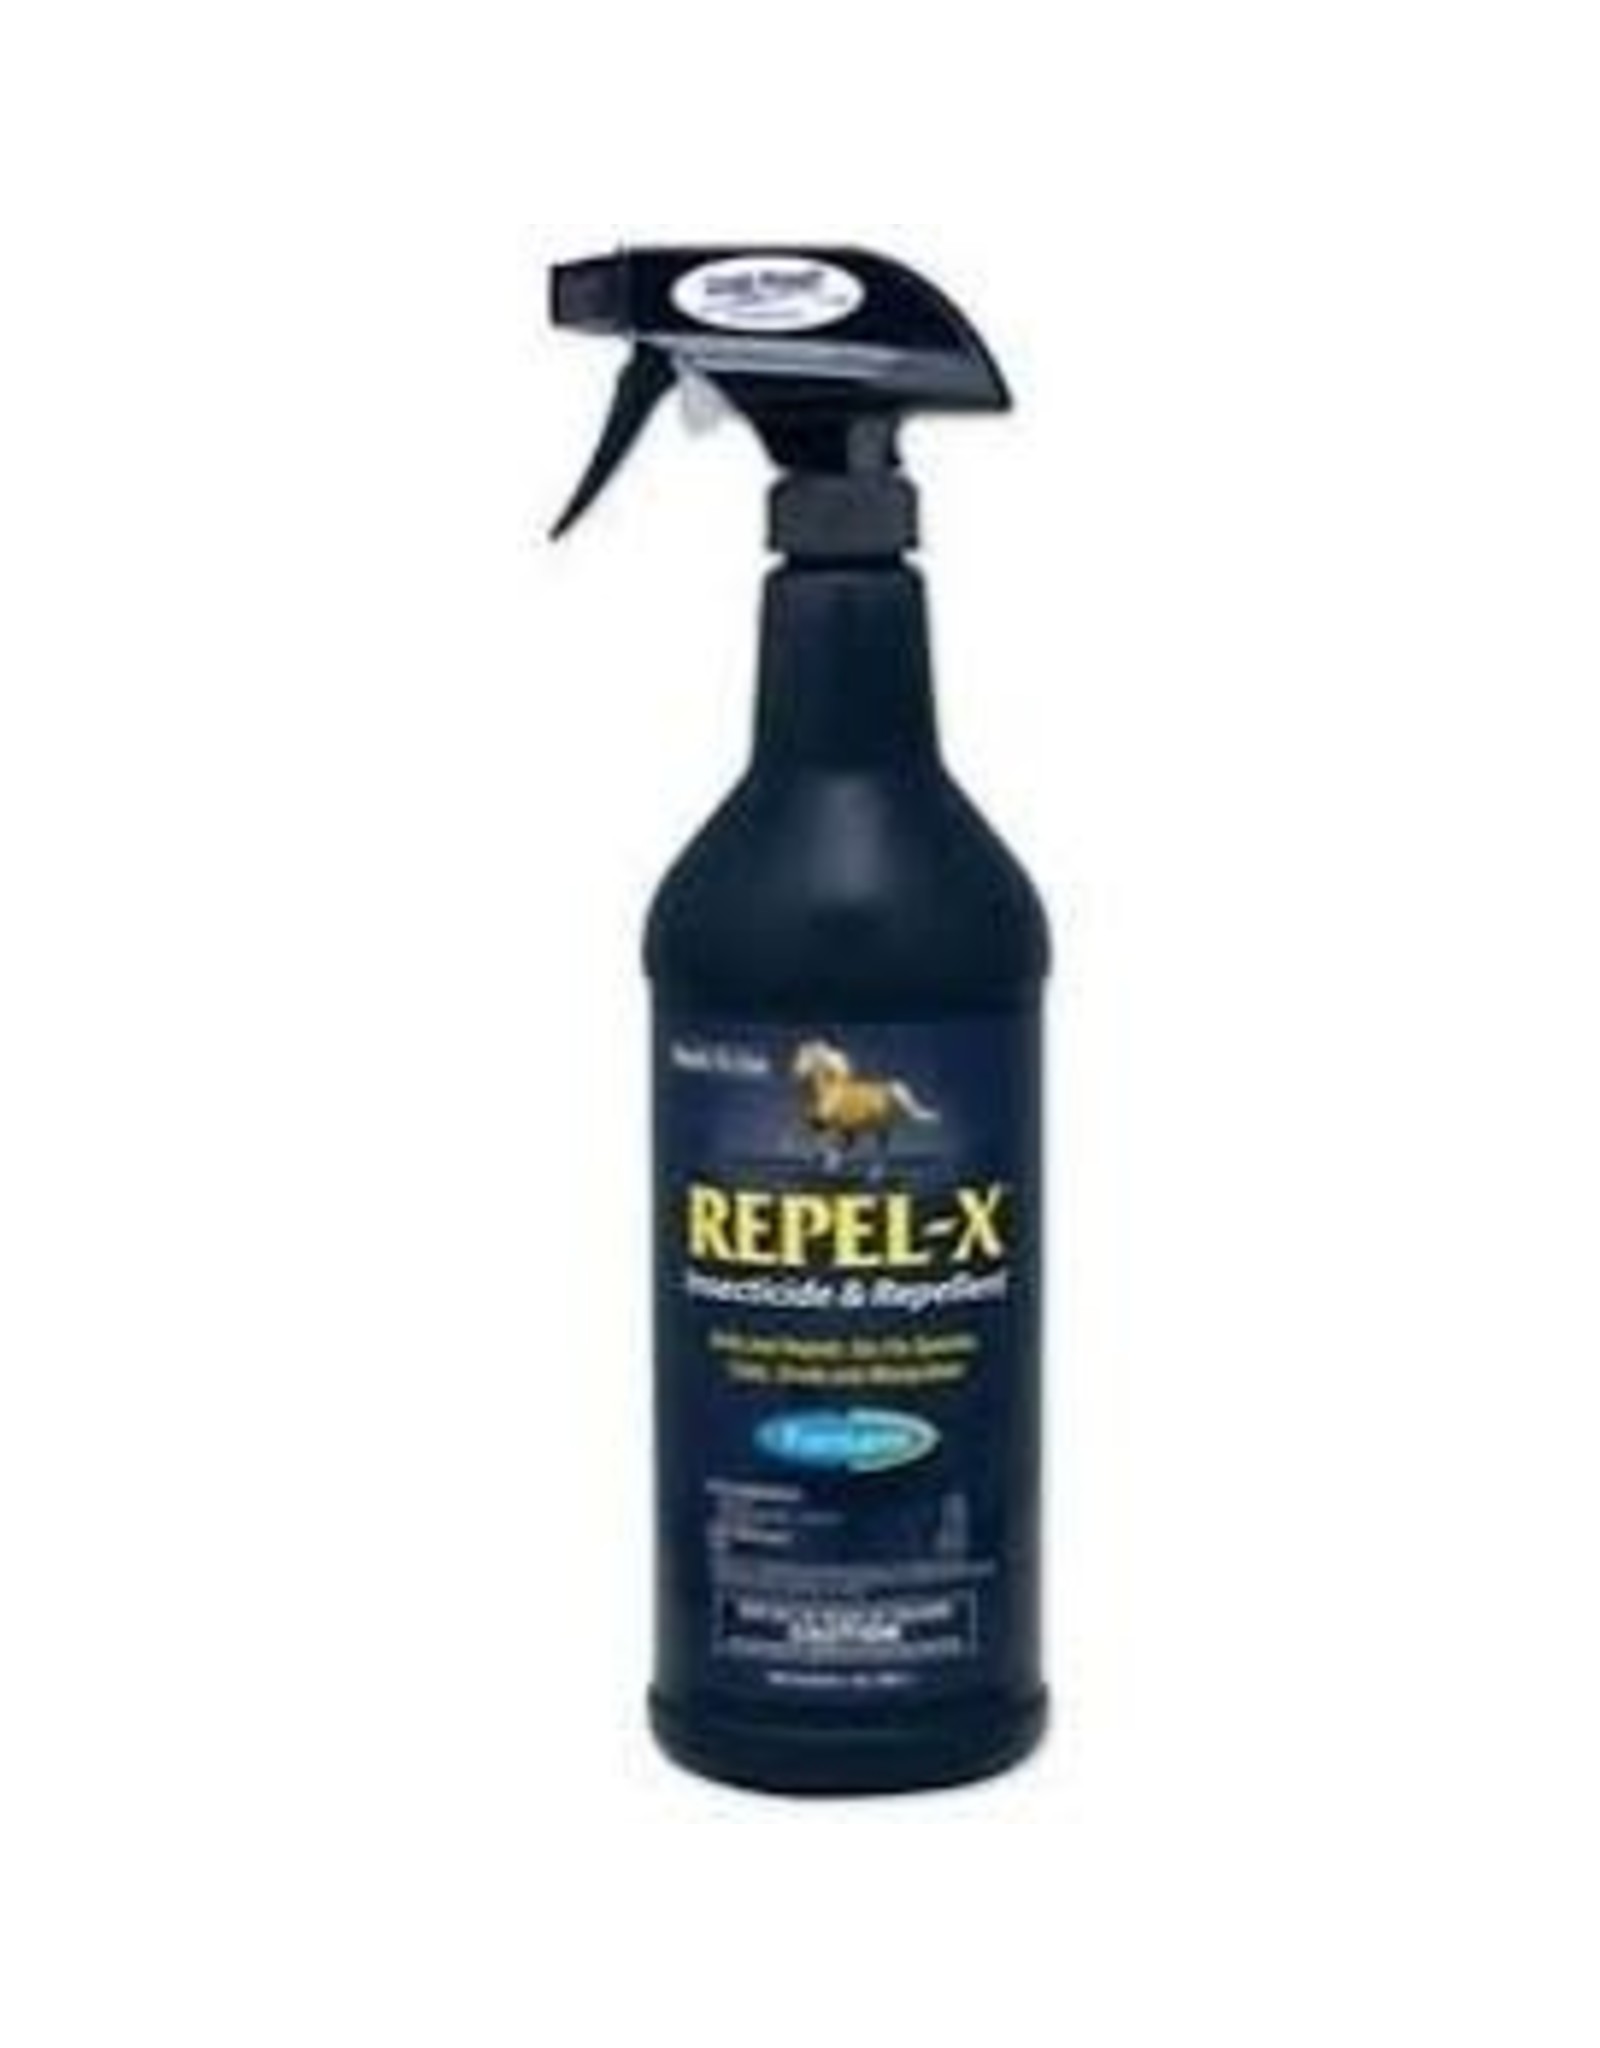 Repel-X Fly Spray 32oz